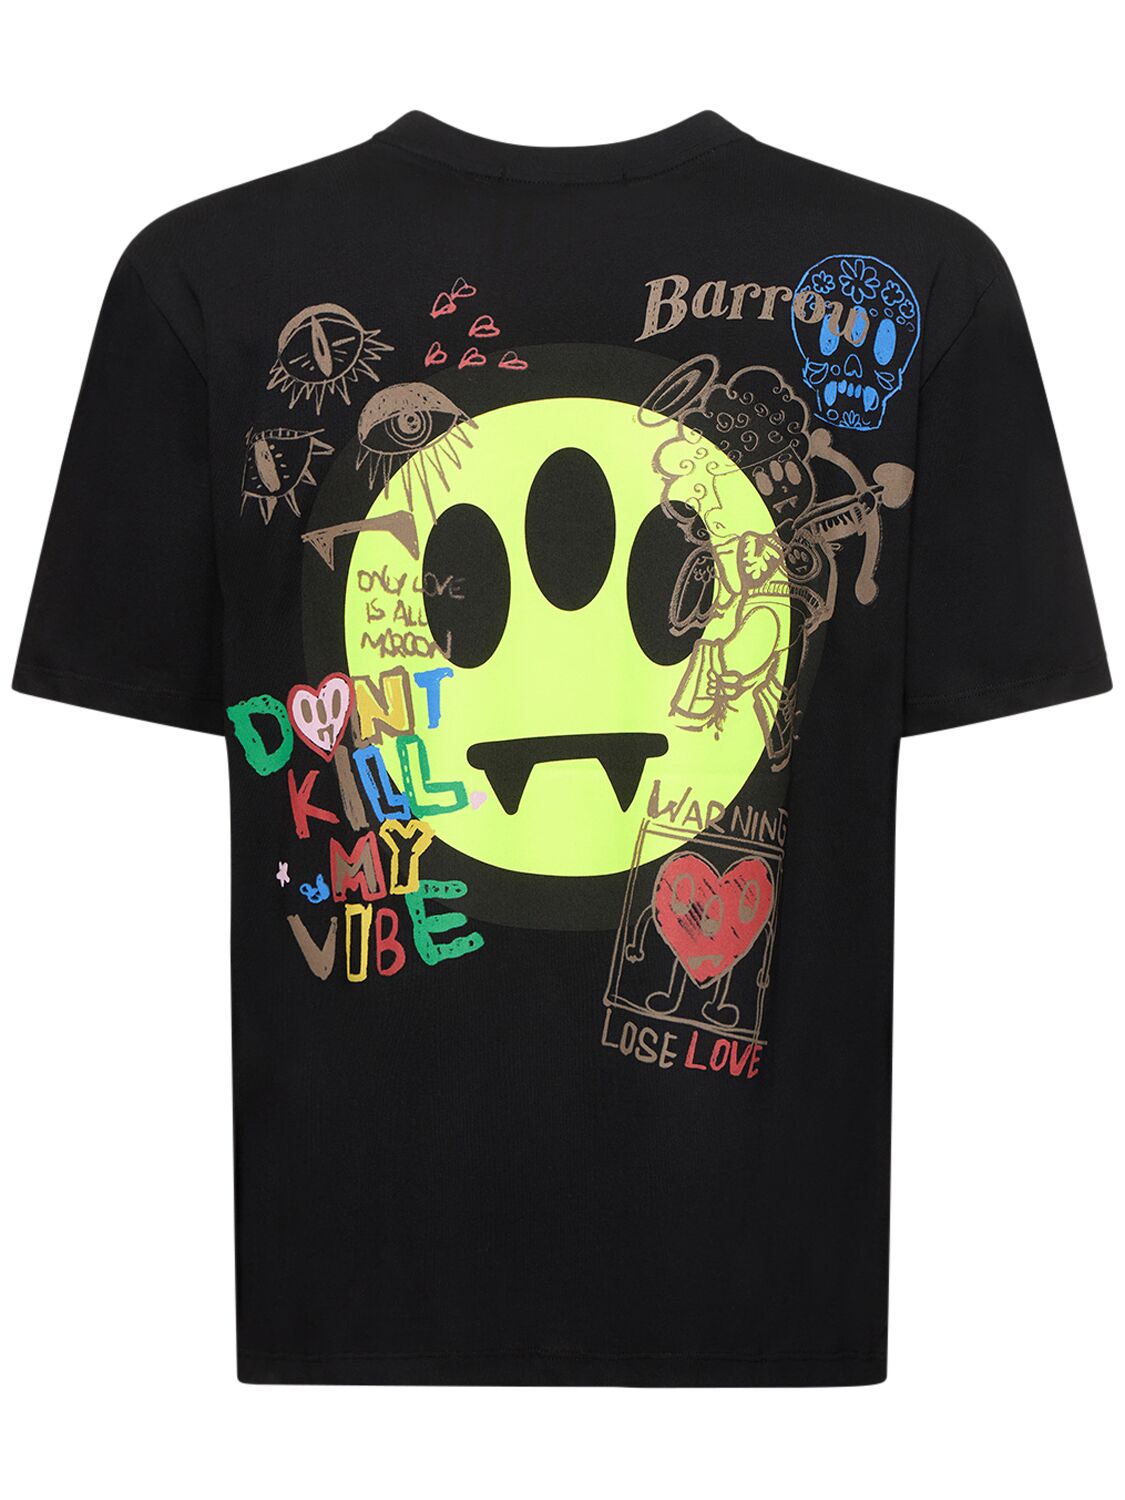 T-shirt Unisexe En Coton Imprimé Logo - BARROW - Modalova